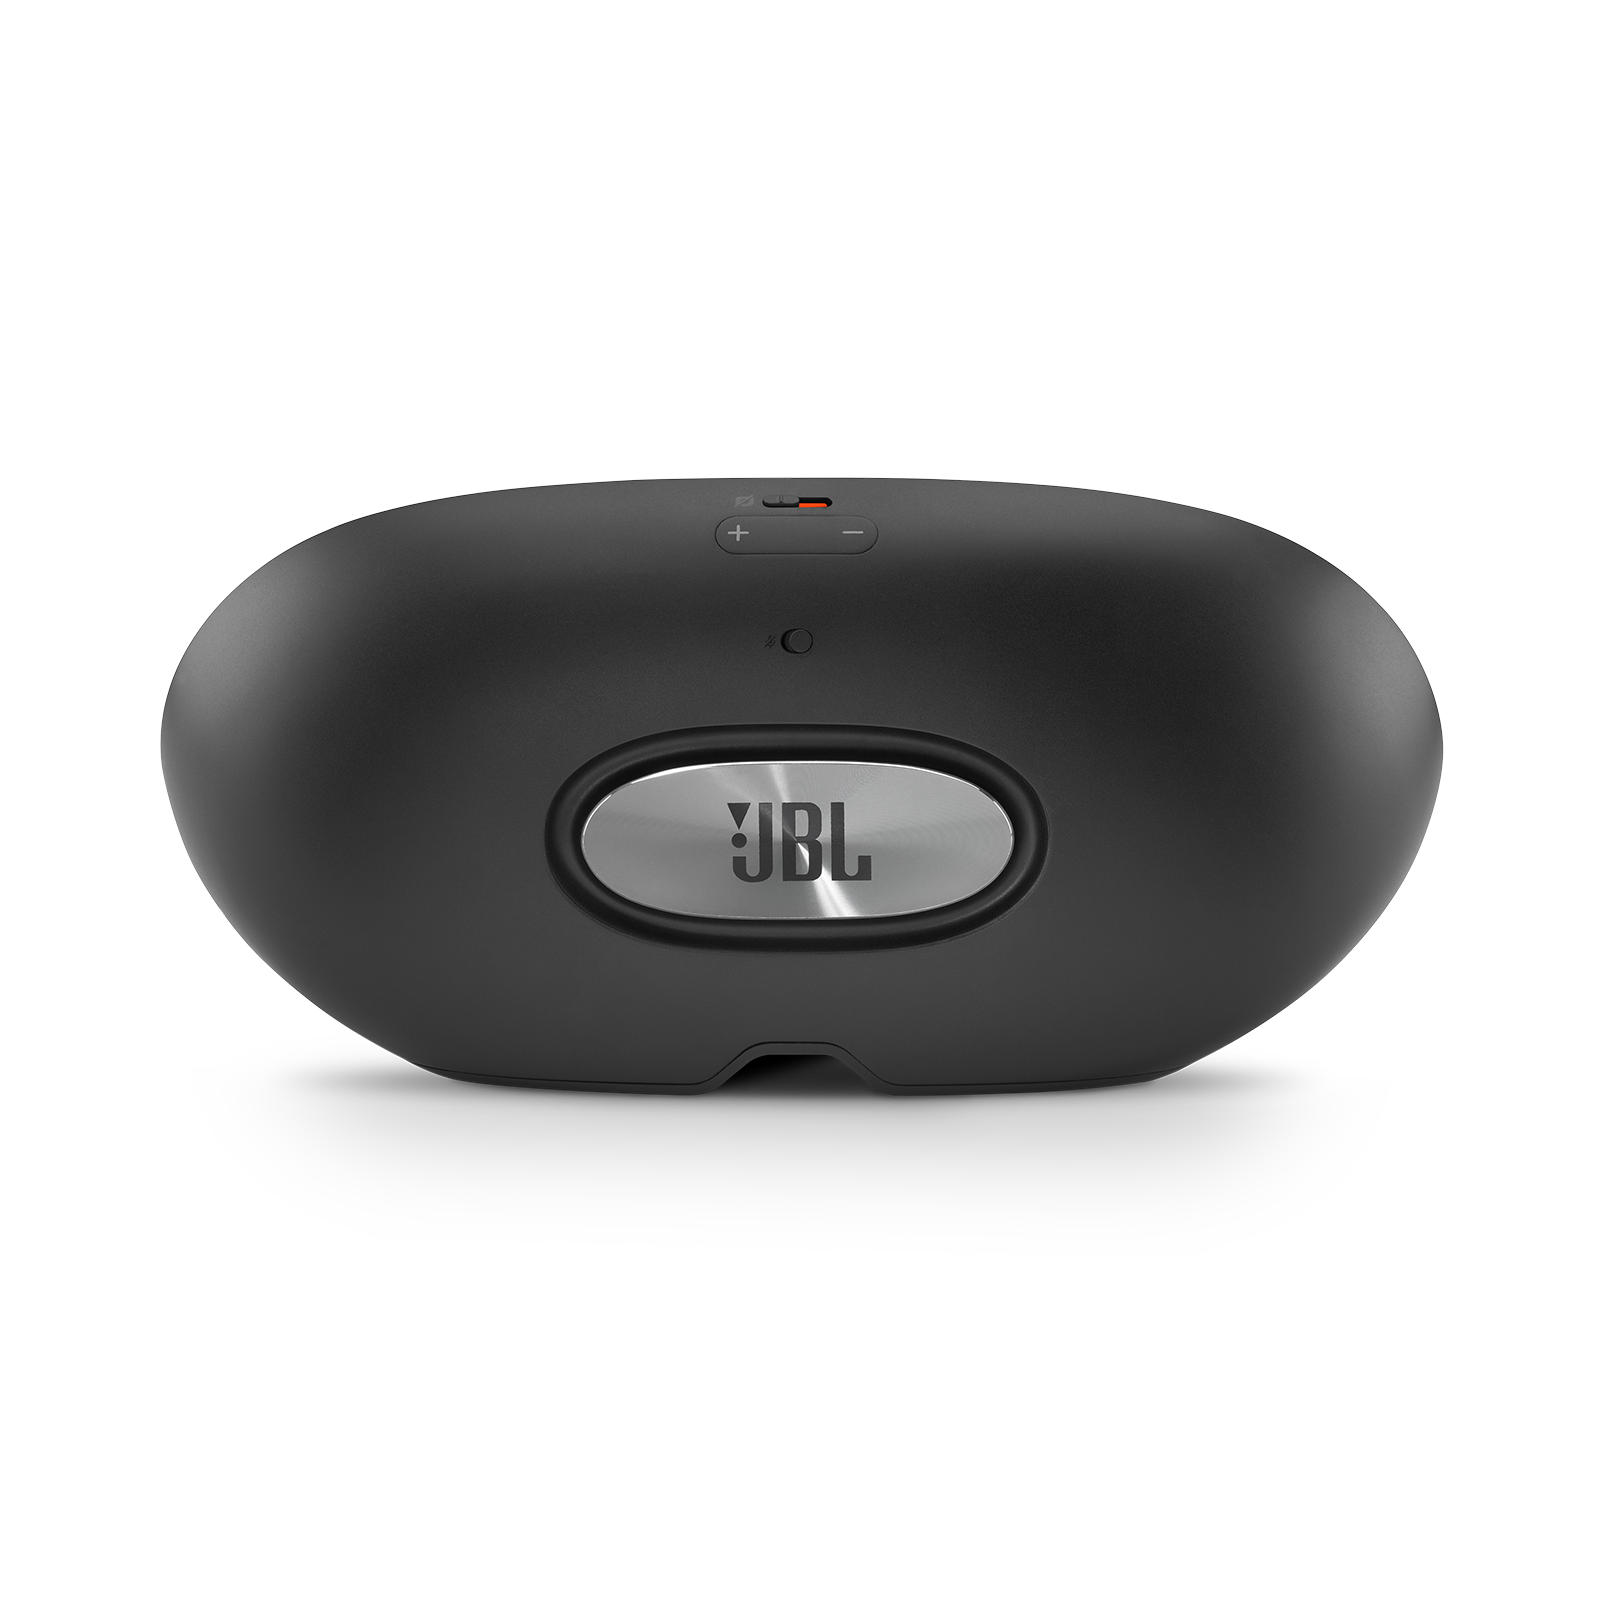 JBL link view speaker smart digital assistant